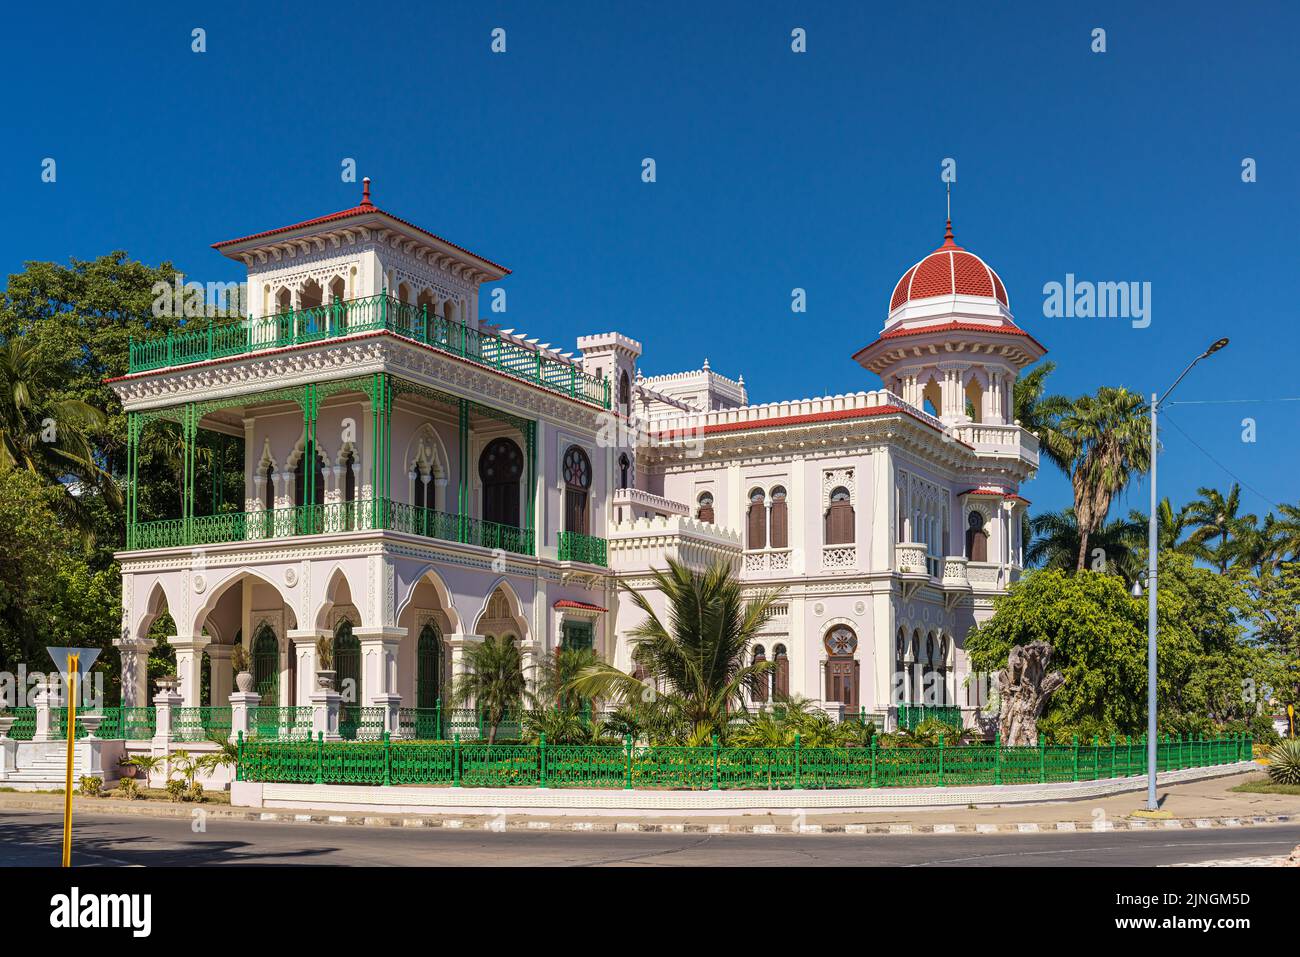 CIENGUEGOS, CUBA - JANUARY 10 2021: Palacio de Valle in Cienfuegos, Cuba Stock Photo